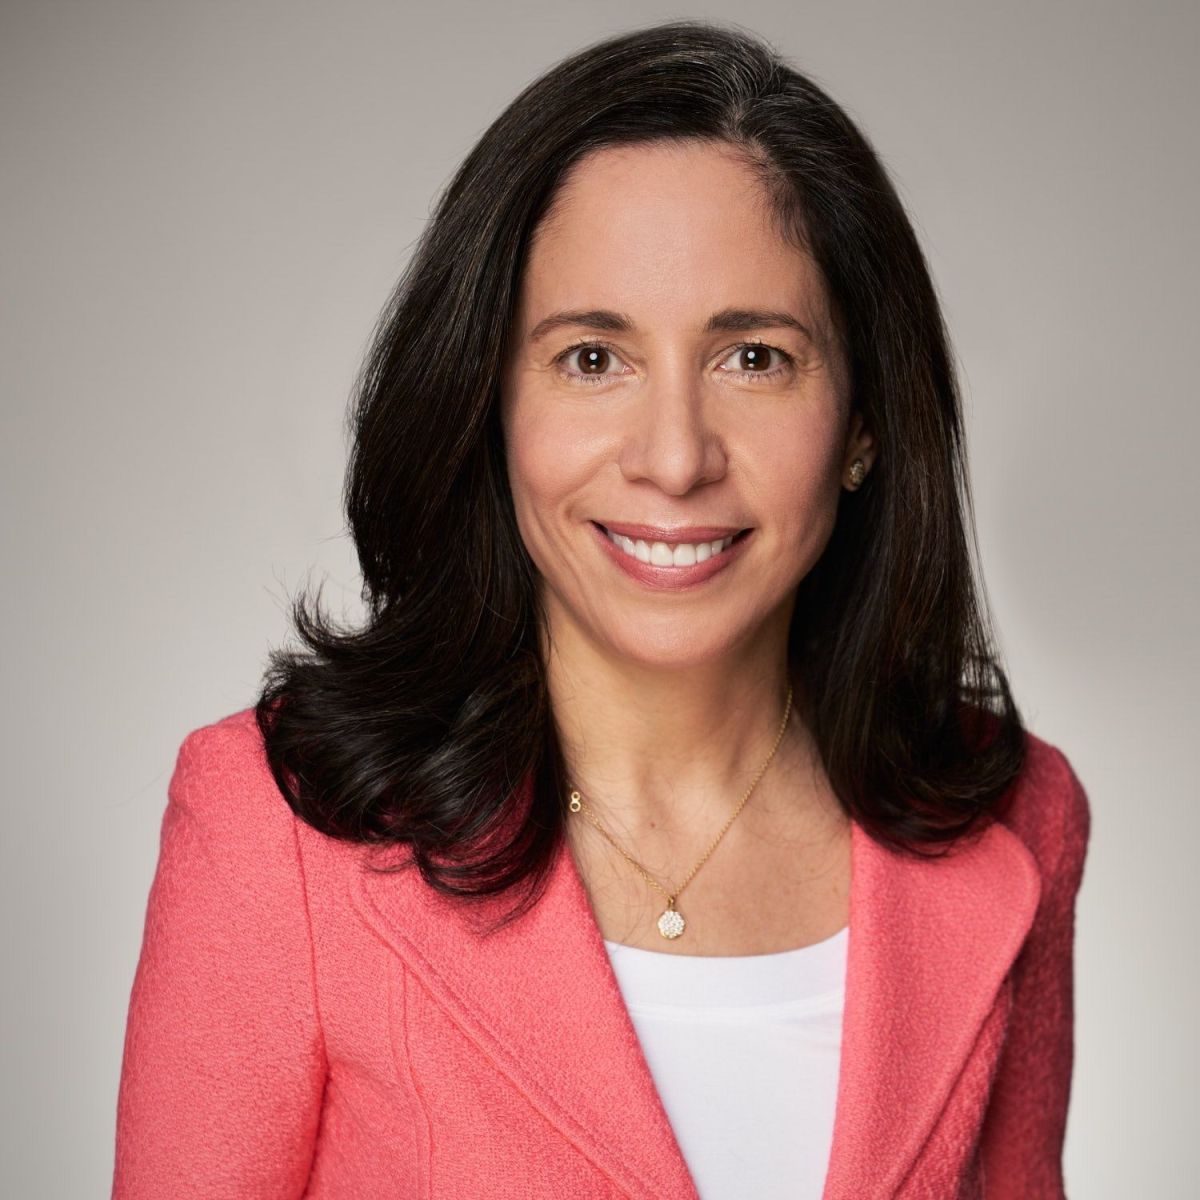 Priscilla Almodovar, una de las mujeres latinas más poderosas de EE.UU., es nombrada como nueva directora ejecutiva de Fannie Mae